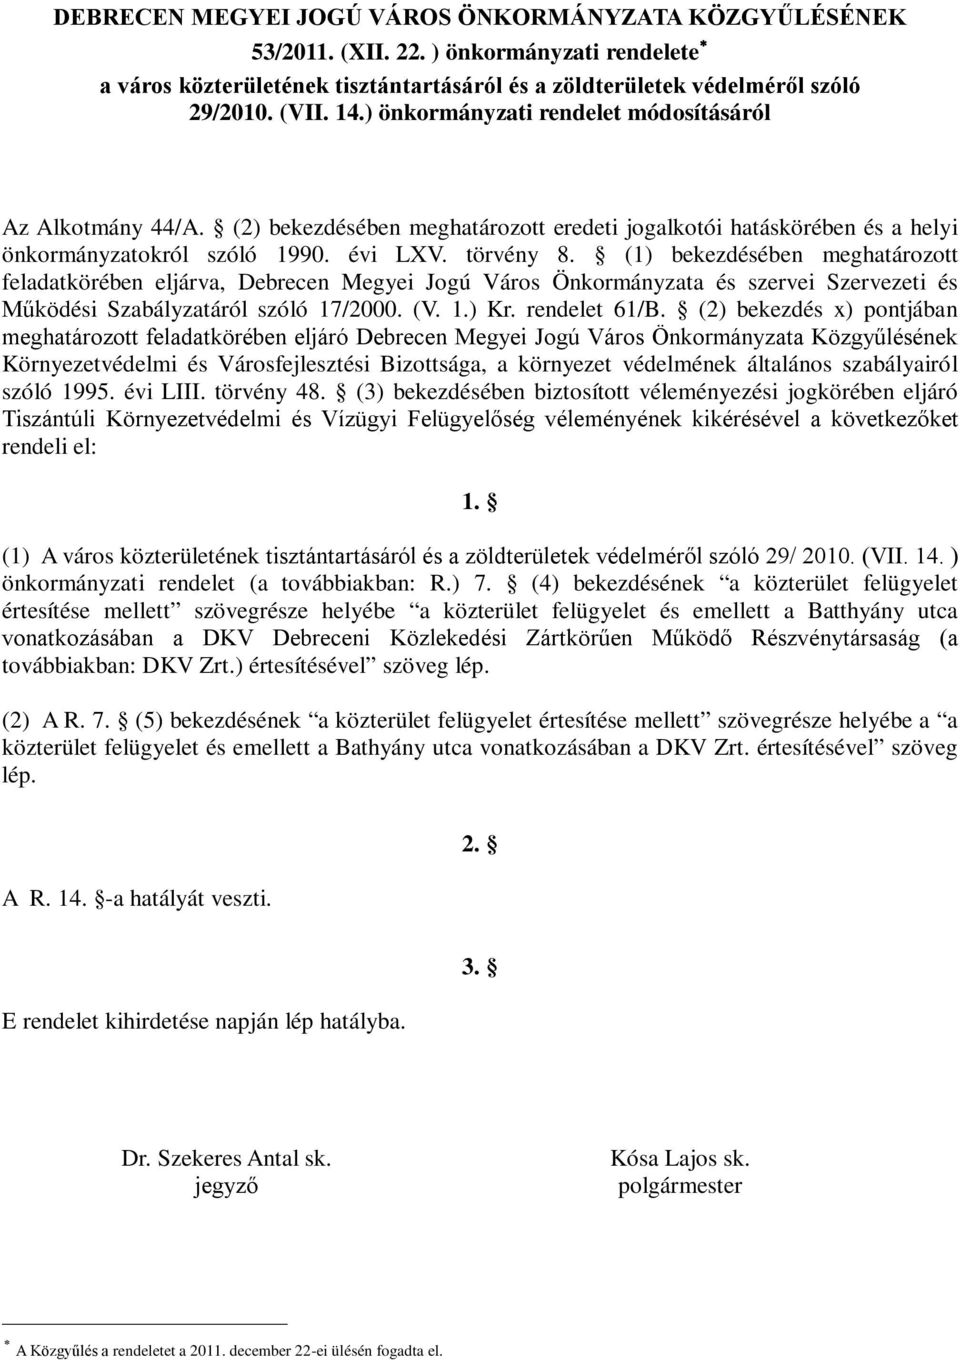 (1) bekezdésében meghatározott feladatkörében eljárva, Debrecen Megyei Jogú Város Önkormányzata és szervei Szervezeti és Működési Szabályzatáról szóló 17/2000. (V. 1.) Kr. rendelet 61/B.